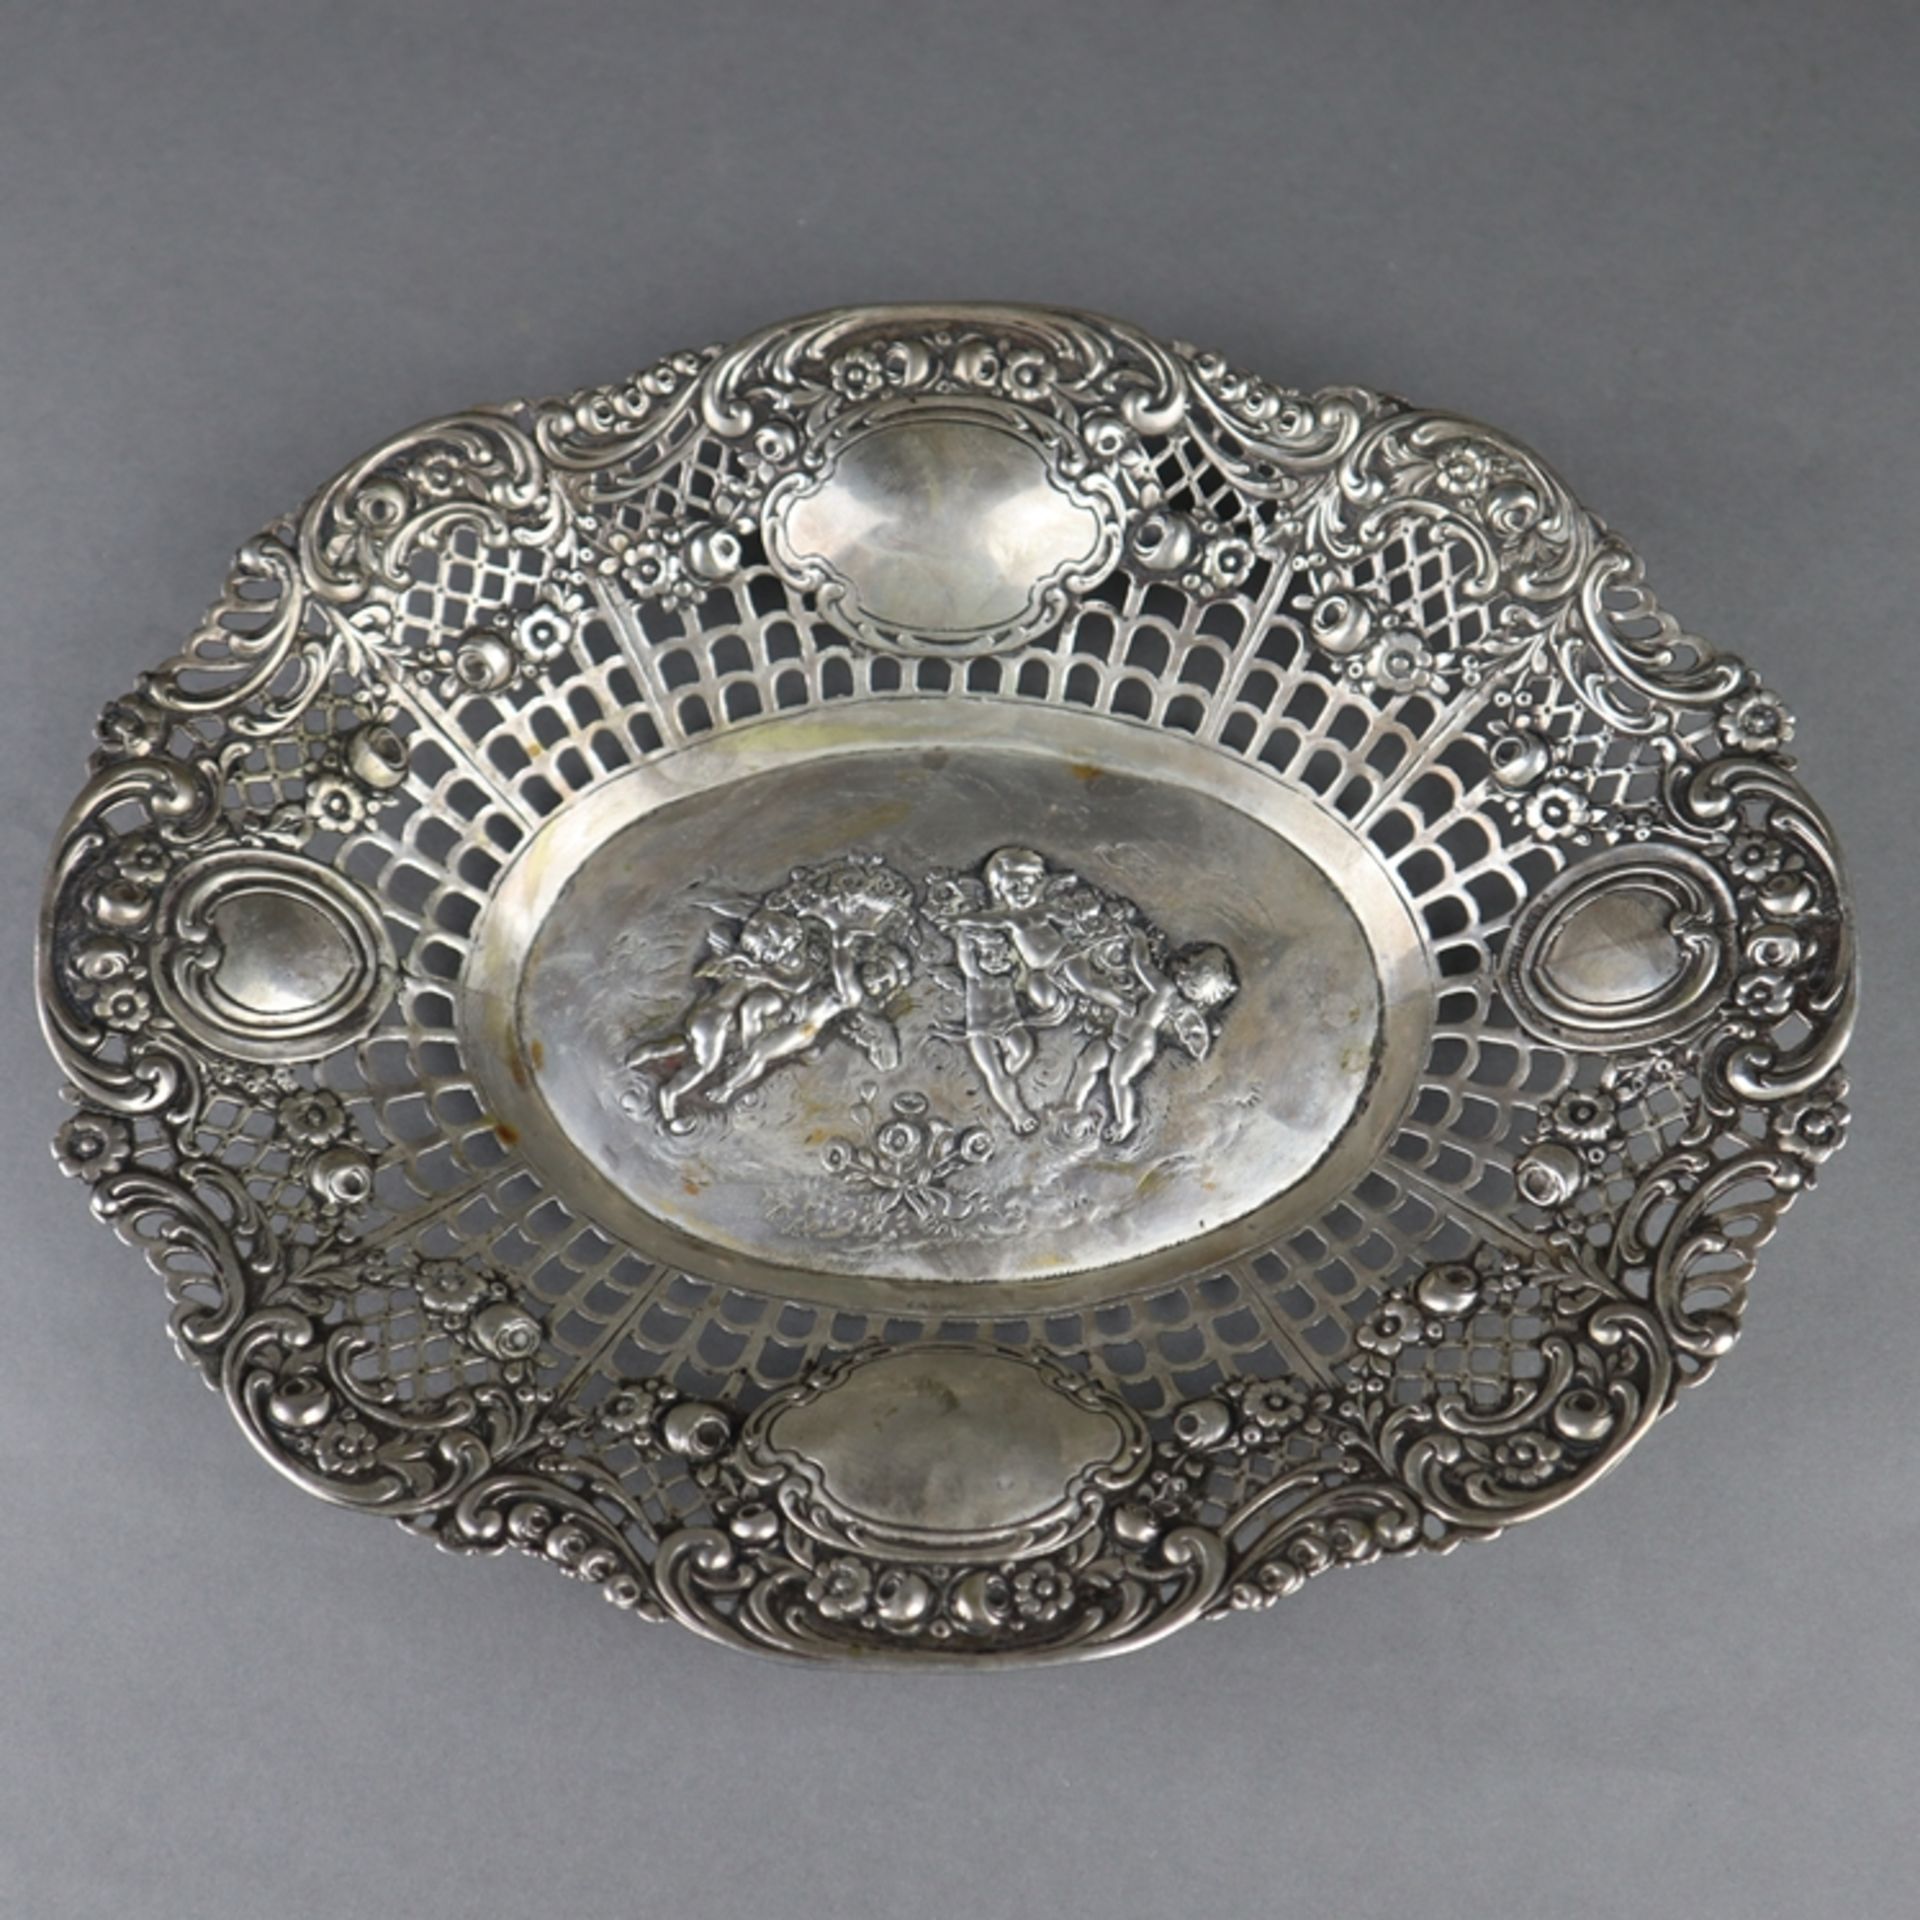 Ovale Korbschale - Silber, um 1900, Punzen: Halbmond/Krone, 800, im Spiegel Puttendekor im Relief,